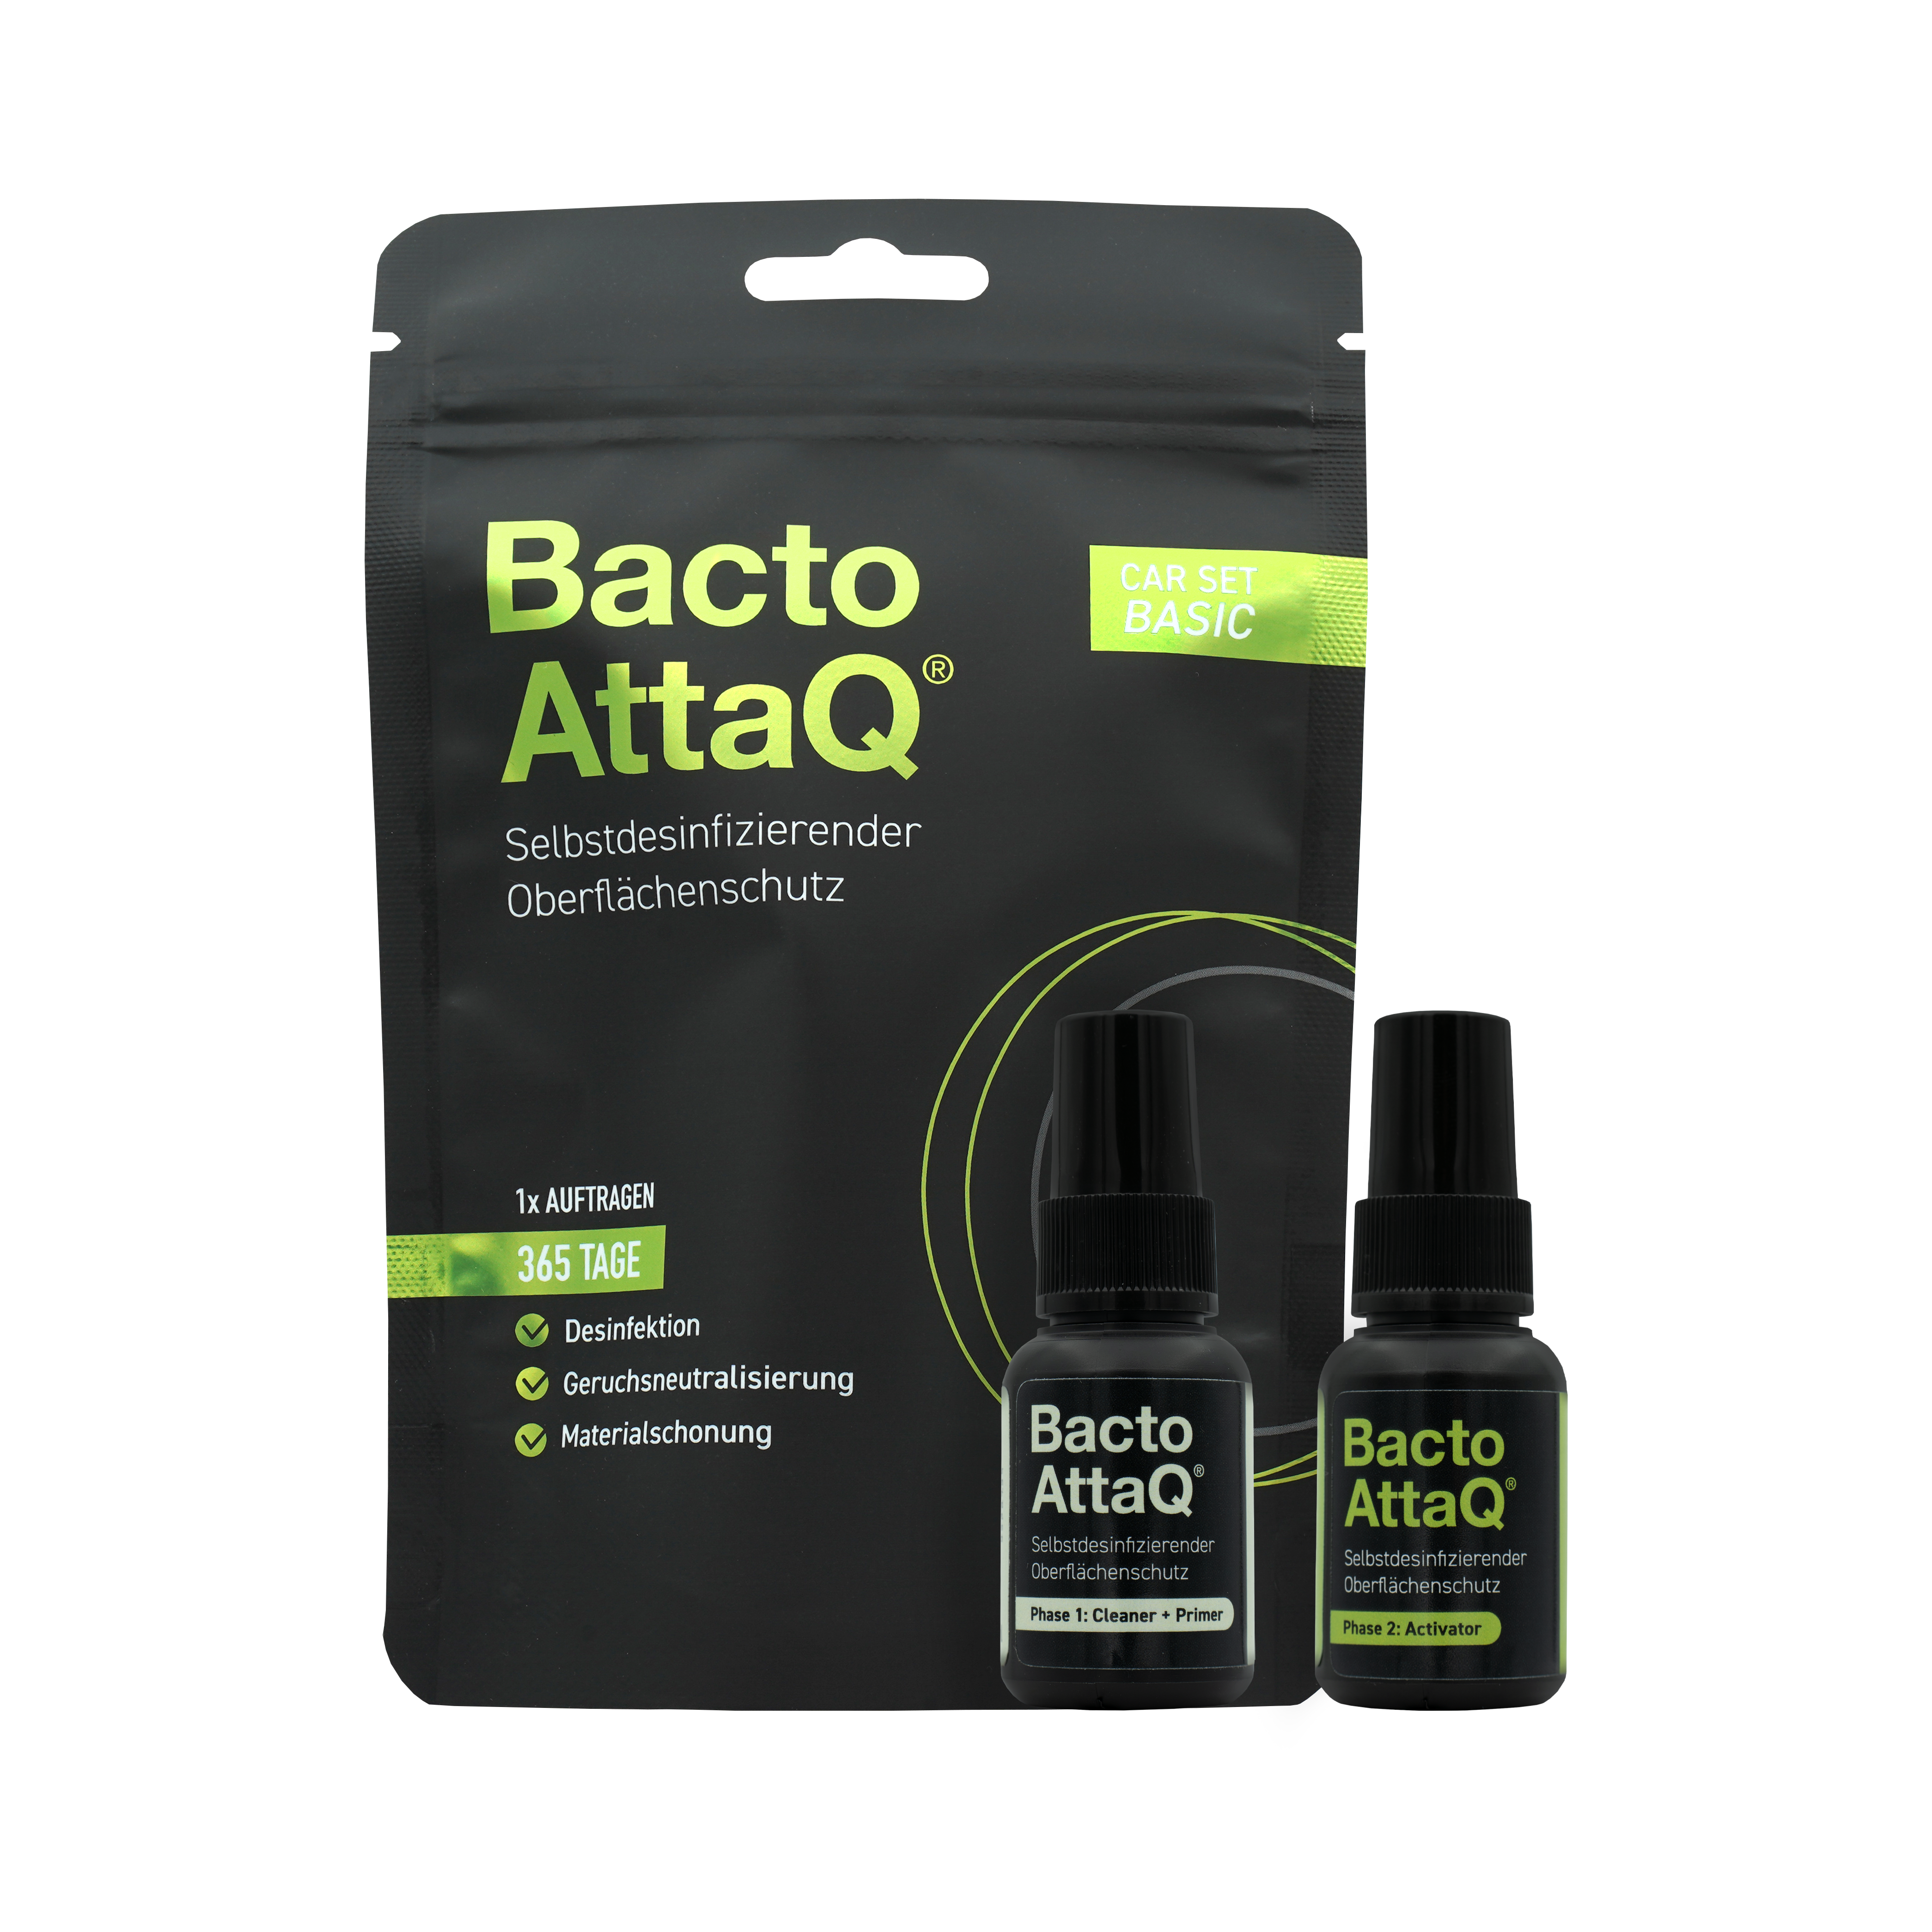 BactoAttaQ Самодезинфекцираща се защита на повърхности